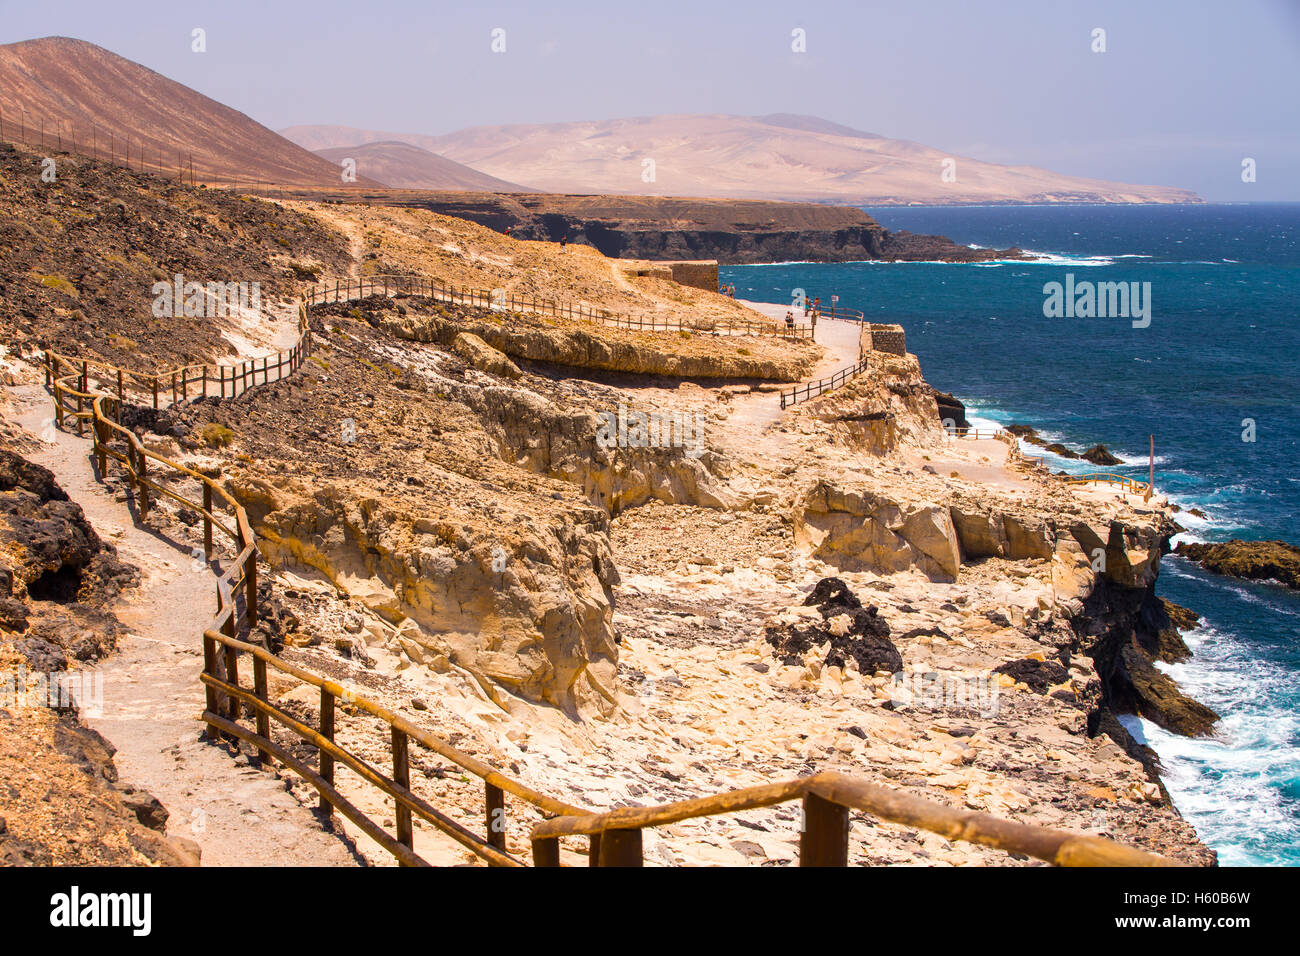 Vue d'Ajuy littoral avec montagnes volcanique sur l'île de Fuerteventura, Îles Canaries, Espagne. Banque D'Images